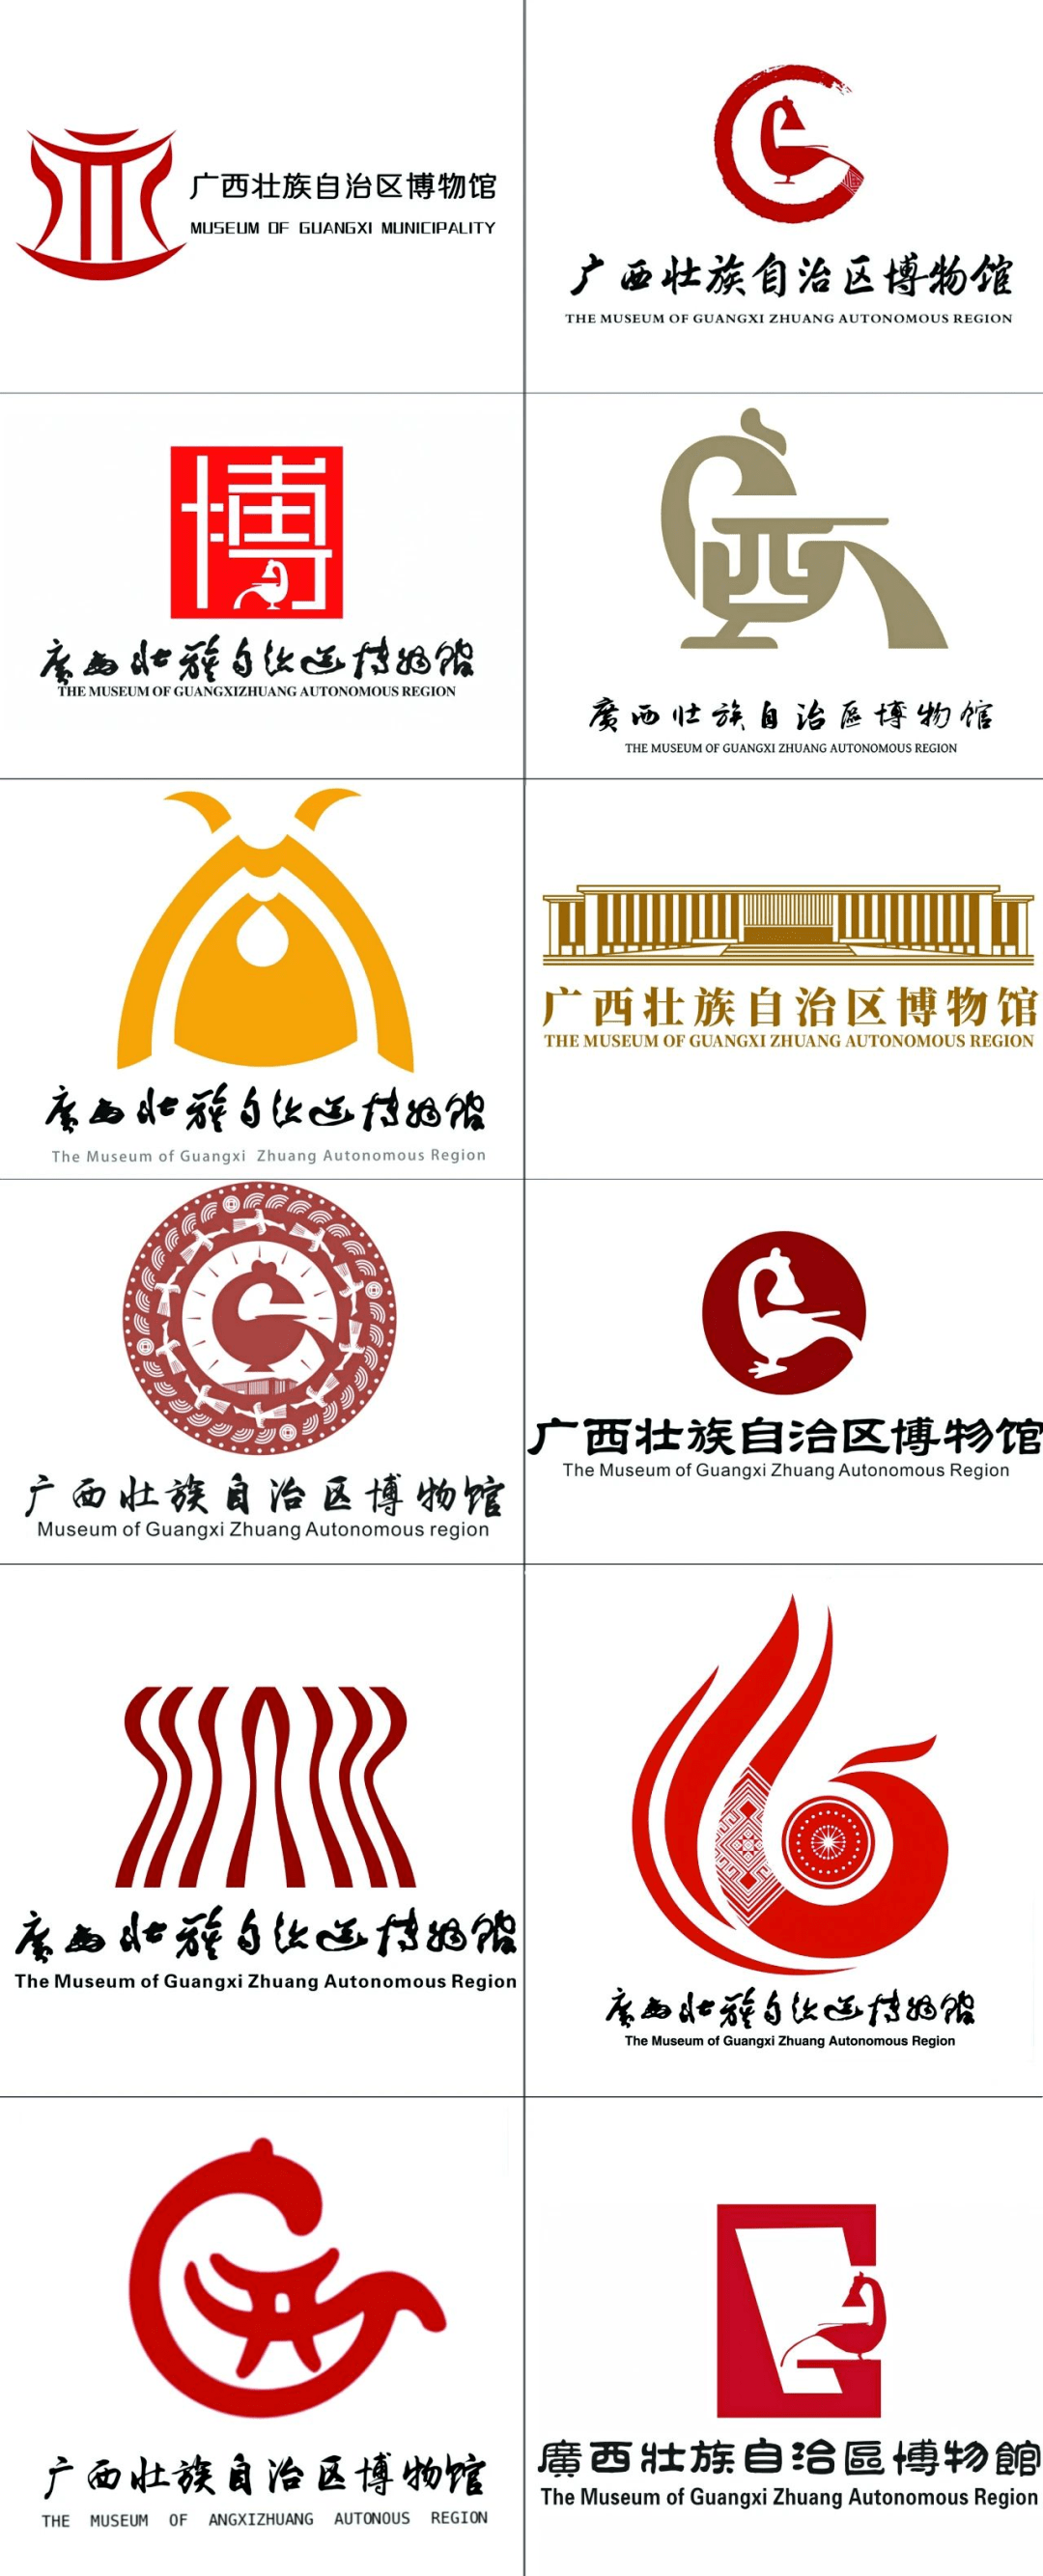 广西壮族自治区博物馆logo大家一起定